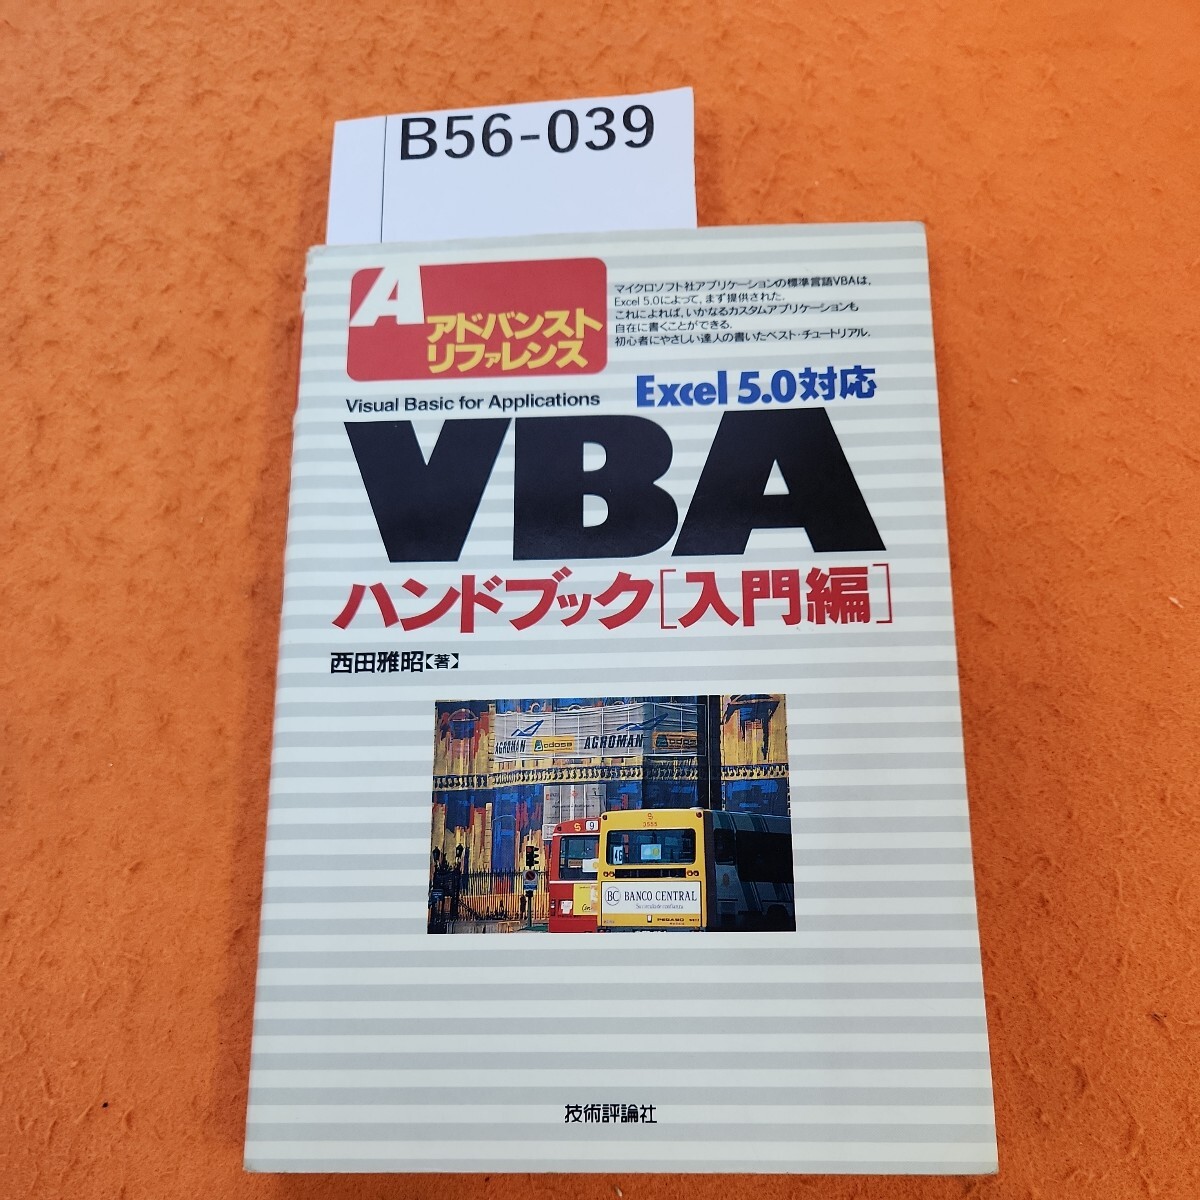 B56-039 A advanced справочная информация VBA рука книжка введение сборник вписывание есть.